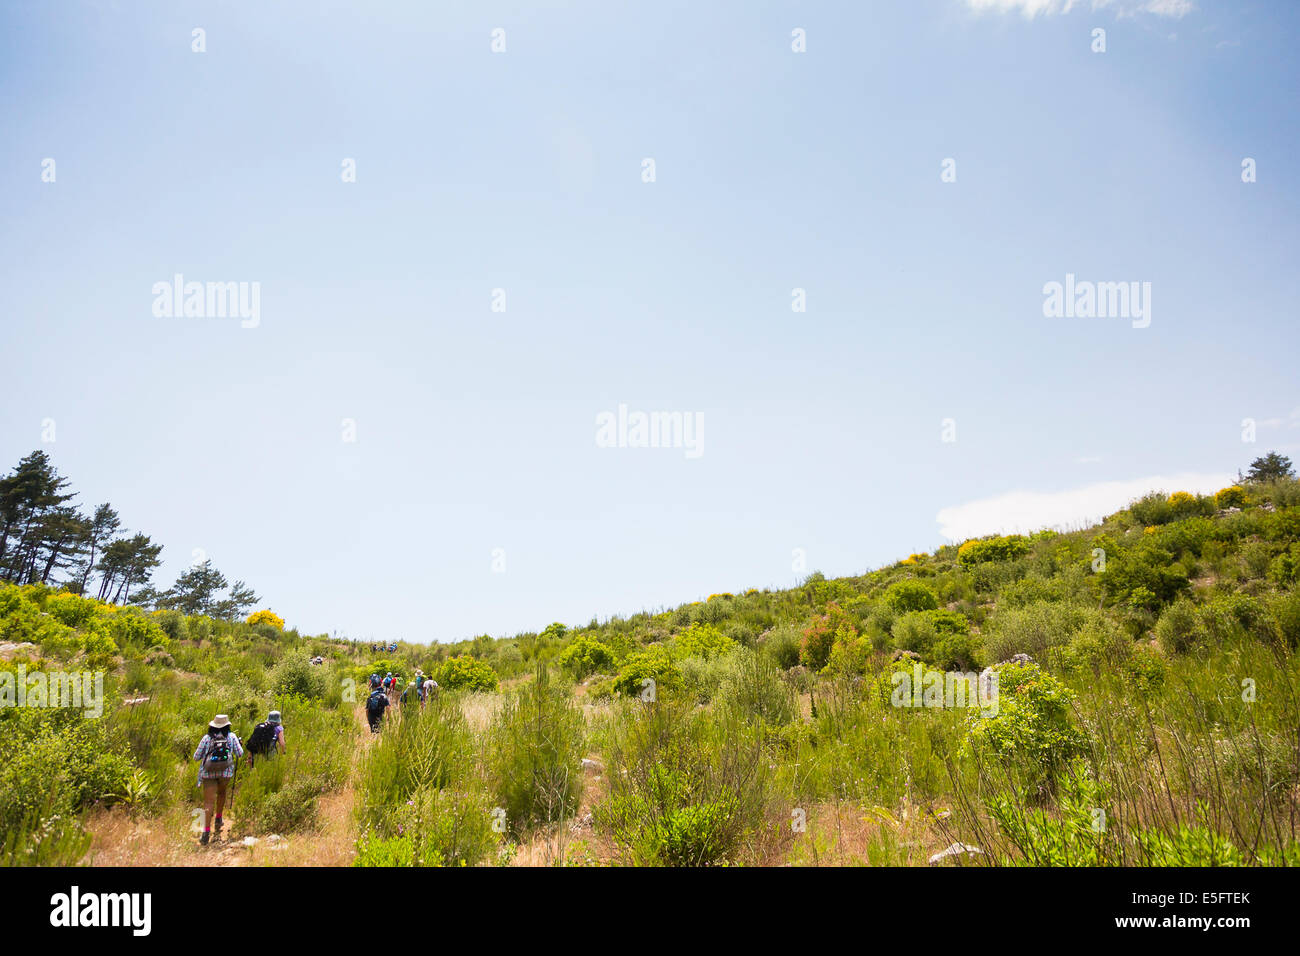 CIRALI, Turchia esodo gruppo trekking sulla Via Licia. Foto Stock